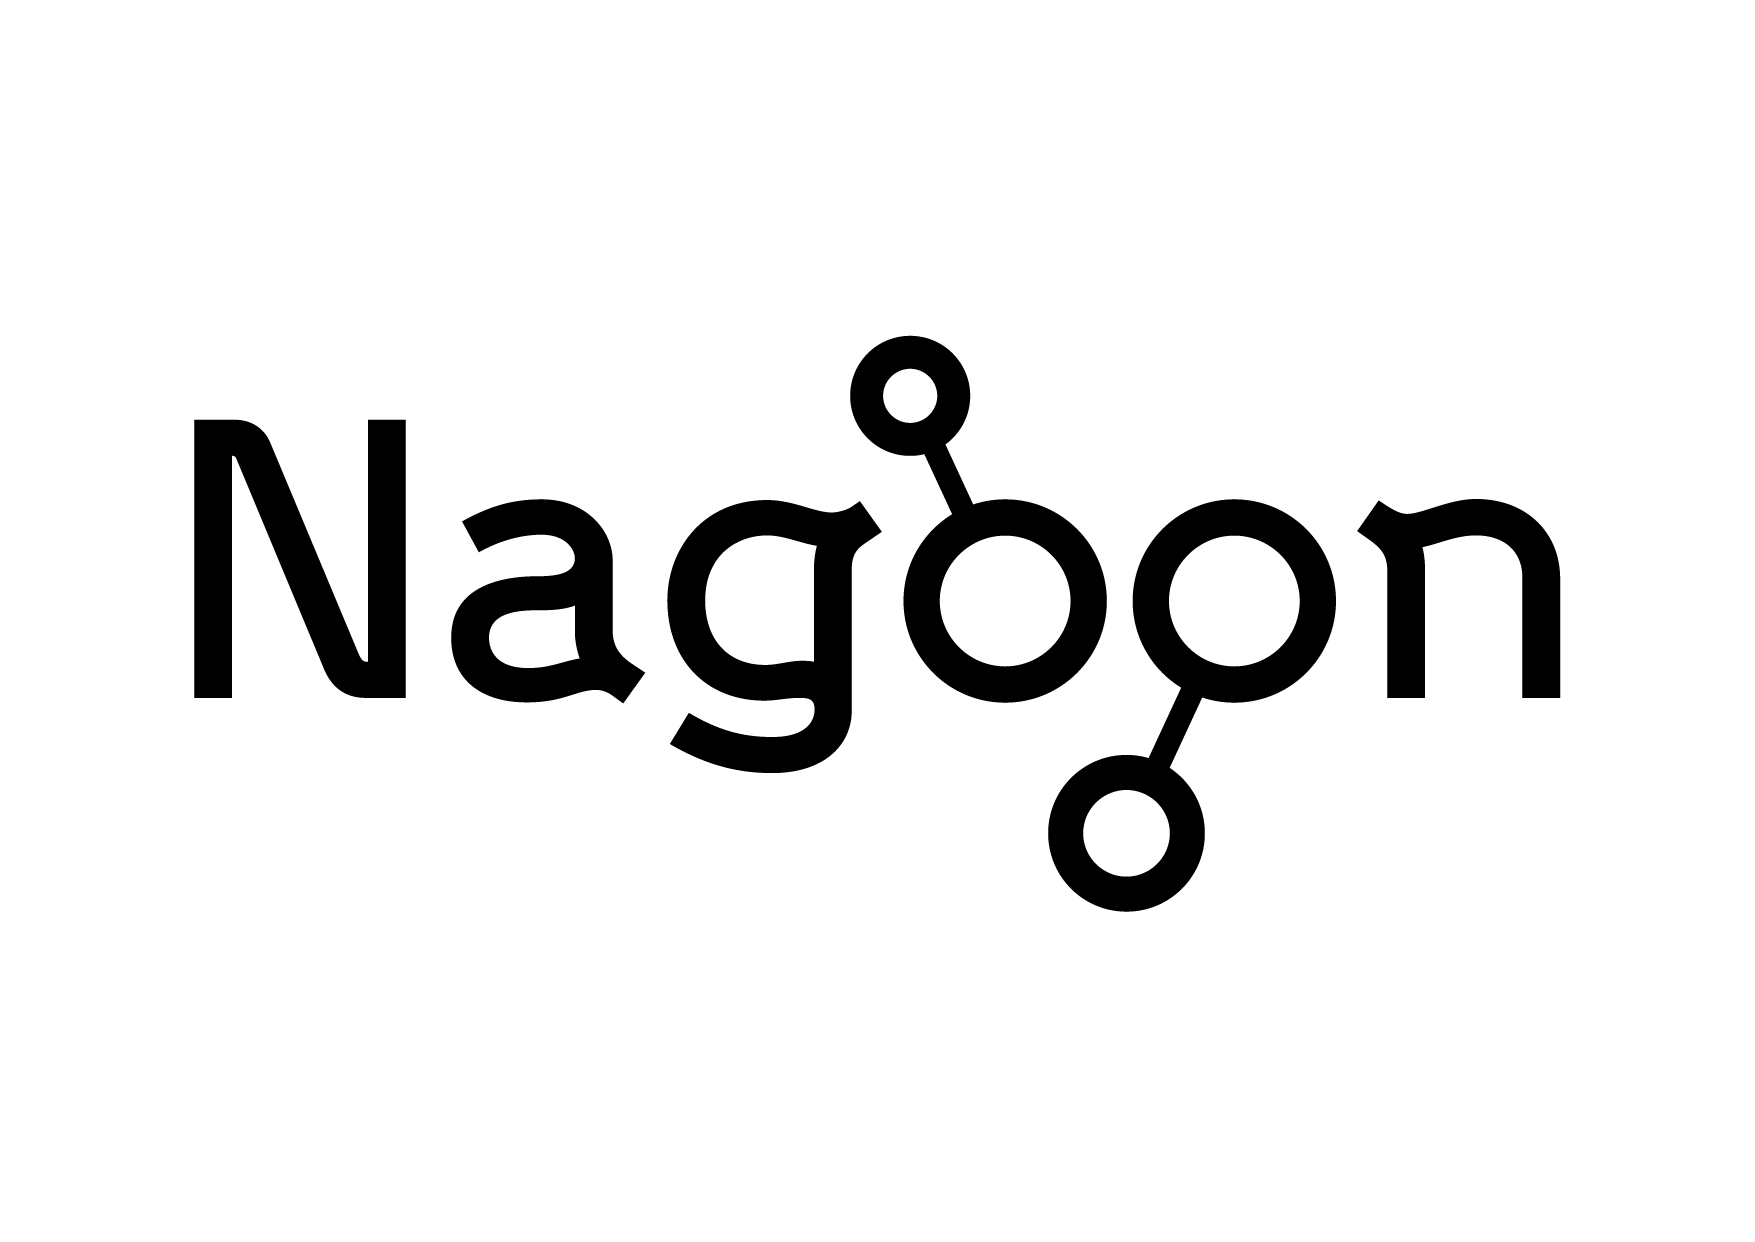 Nagoon